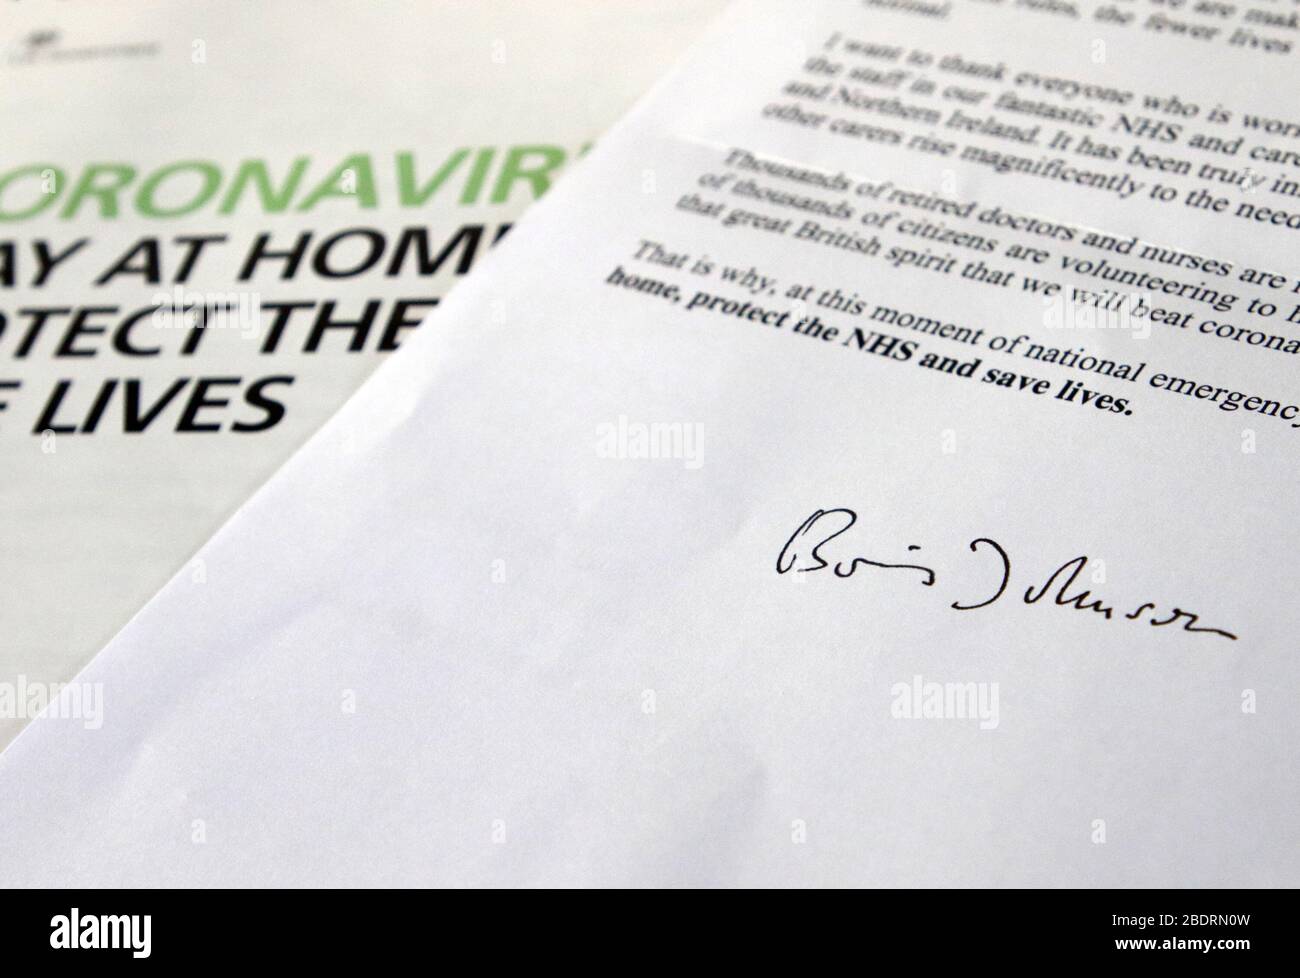 REINO UNIDO. Una carta de Coronavirus del primer ministro británico Boris Johnson ha sido enviada a todos los hogares del Reino Unido instando al público a quedarse en casa. Alrededor de 30 millones de hogares del Reino Unido recibirán la carta Covid-19, junto con un folleto sobre los síntomas, directrices y concienciación del Coronavirus. Reino Unido 6 de abril de 2020 Ref: LMK73-J6425-060420 Keith Mayhew/Landmark Media WWW.LMKMEDIA.COM Foto de stock